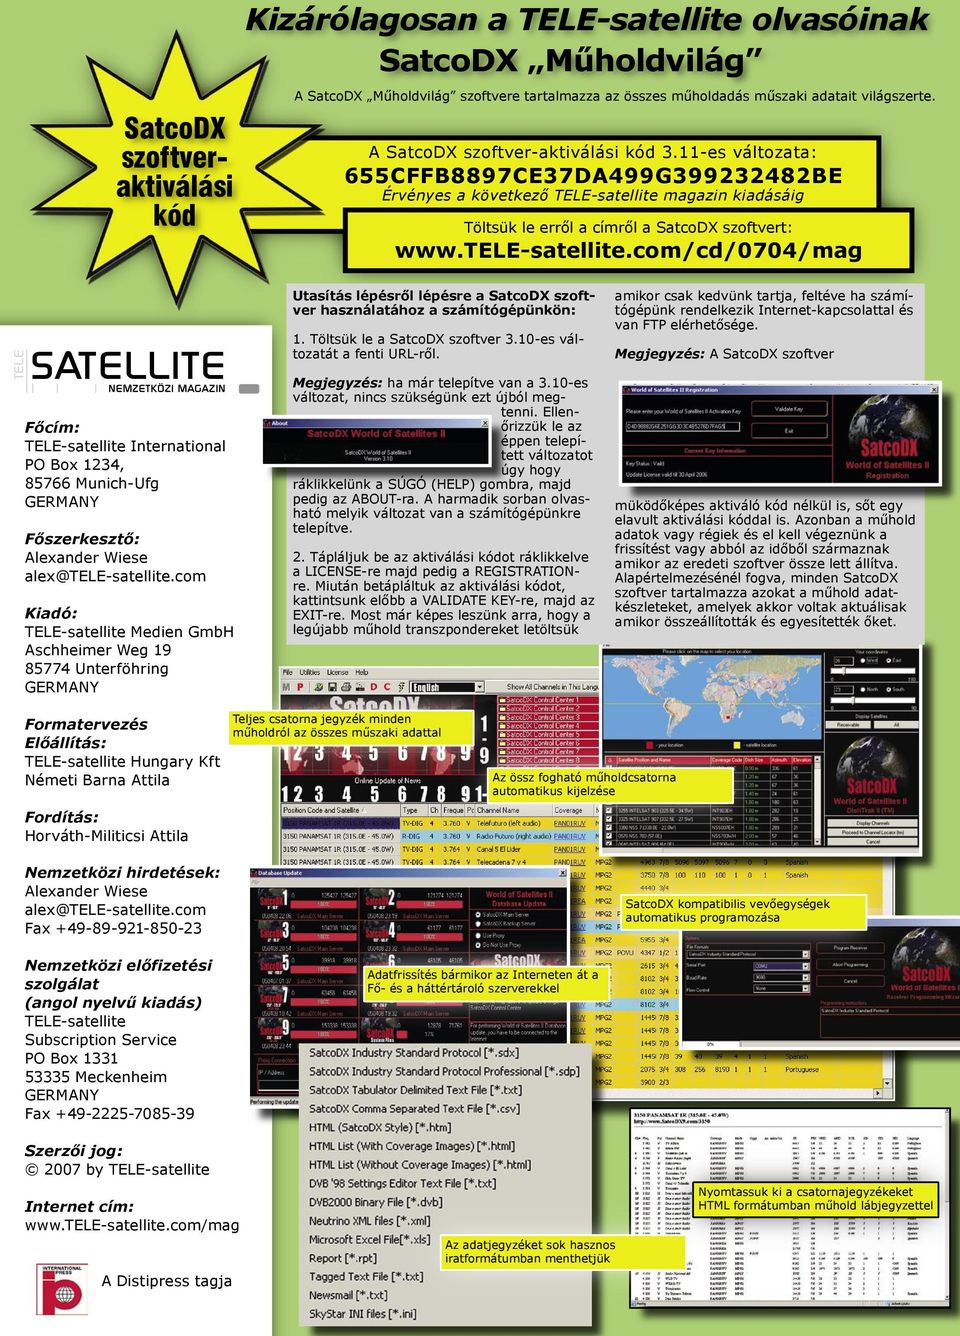 11-es változata: 655CFFB8897CE37DA499G399232482BE Érvényes a következő TELE-satellite magazin kiadásáig Töltsük le erről a címről a SatcoDX szoftvert: www.tele-satellite.